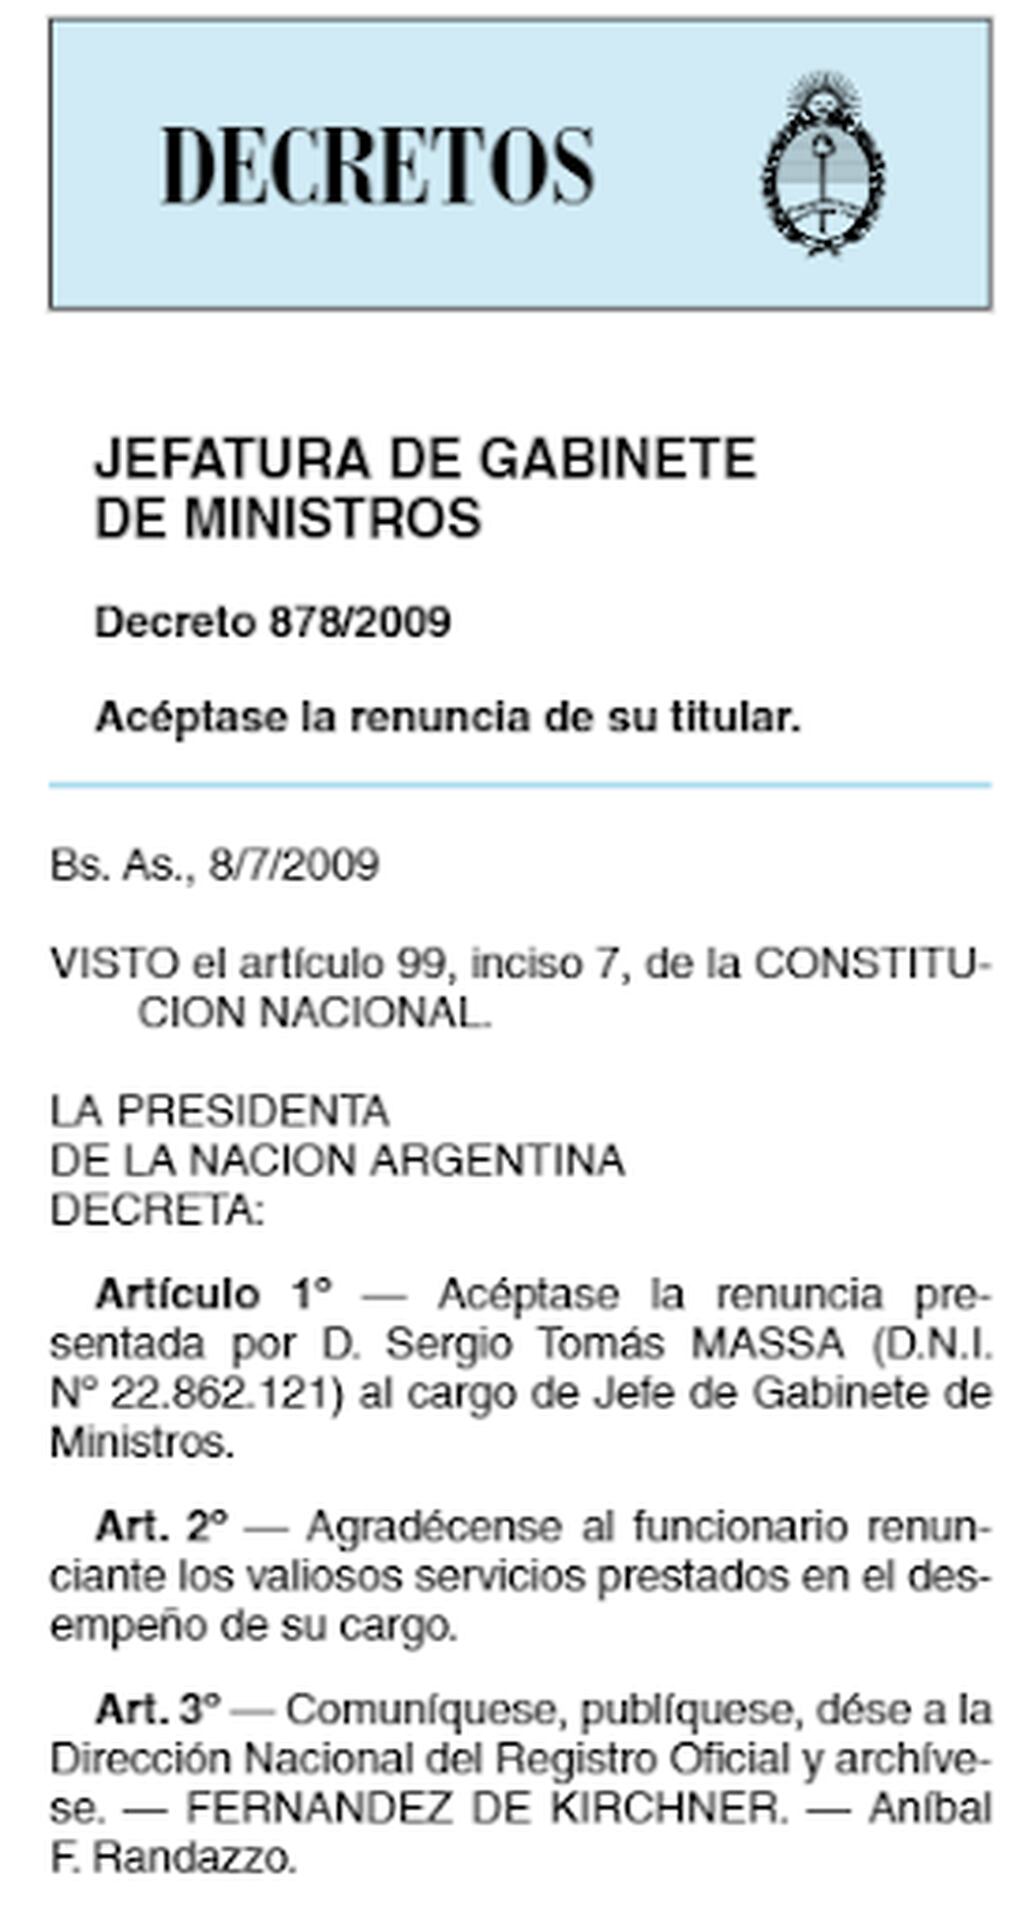 Captura de pantalla del Boletín Oficial publicado el 10 de julio de 2009, hecha el 4 de agosto de 2023.

